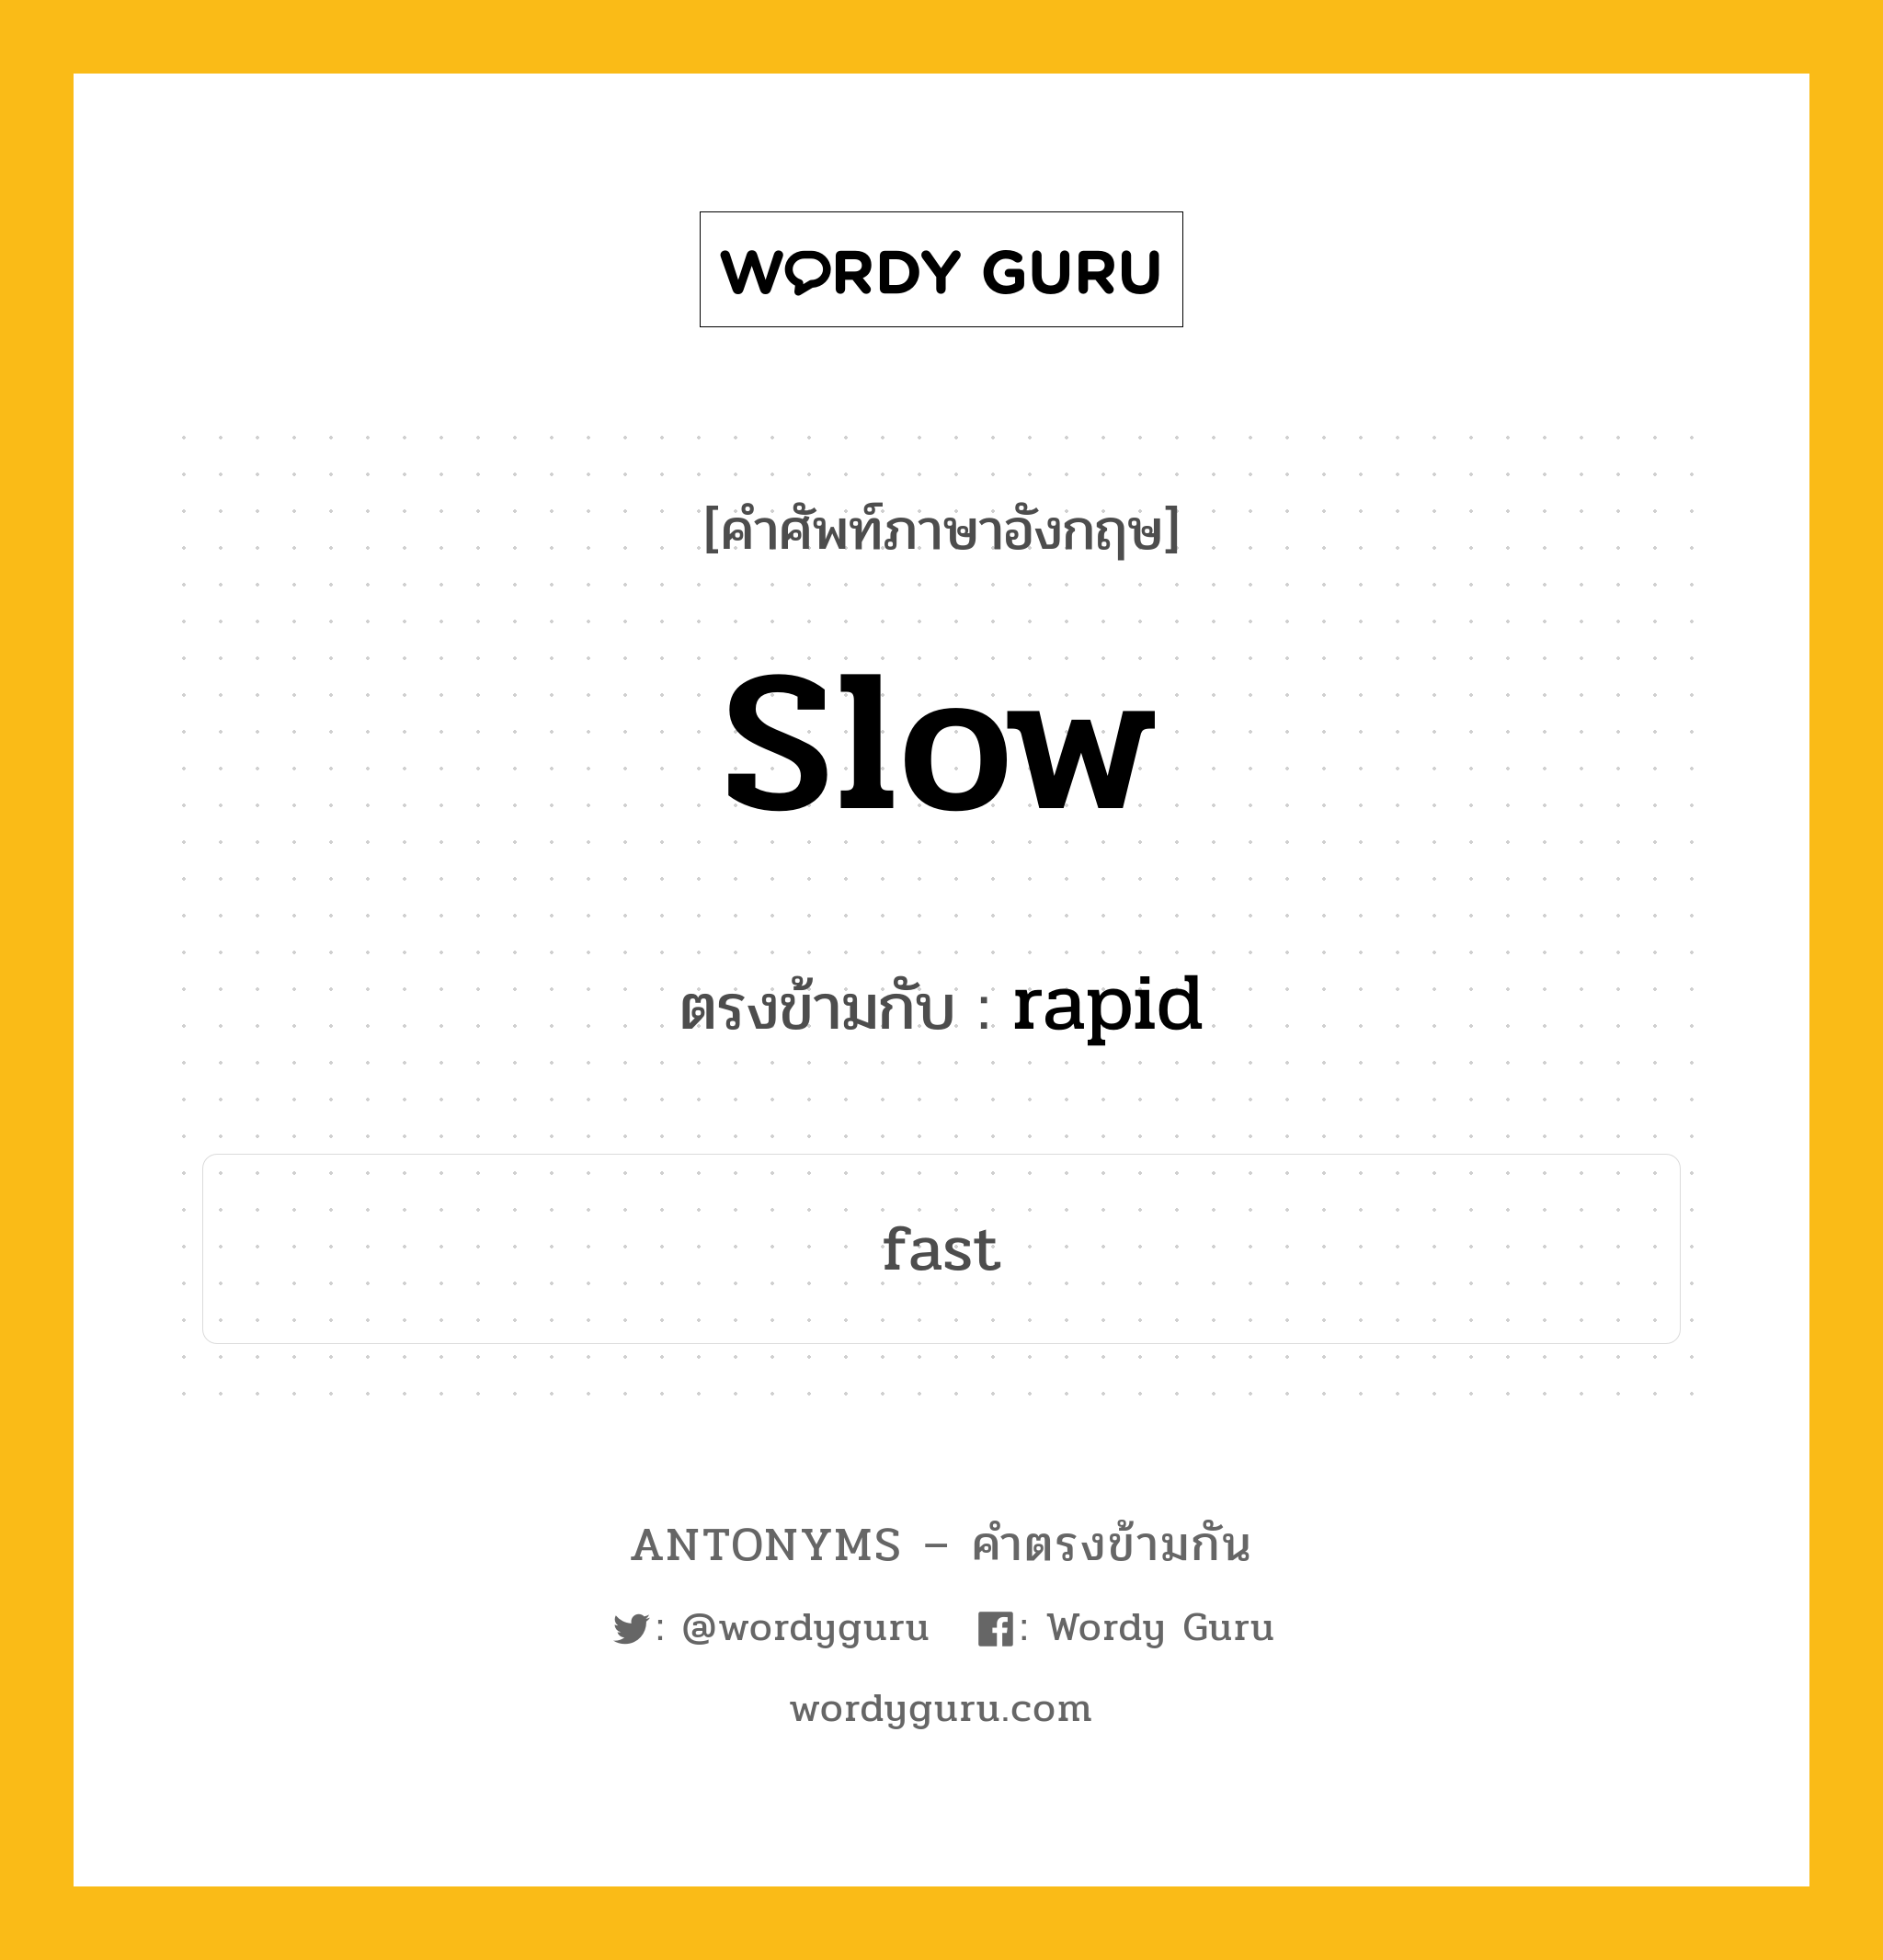 slow เป็นคำตรงข้ามกับคำไหนบ้าง?, คำศัพท์ภาษาอังกฤษ slow ตรงข้ามกับ rapid หมวด rapid